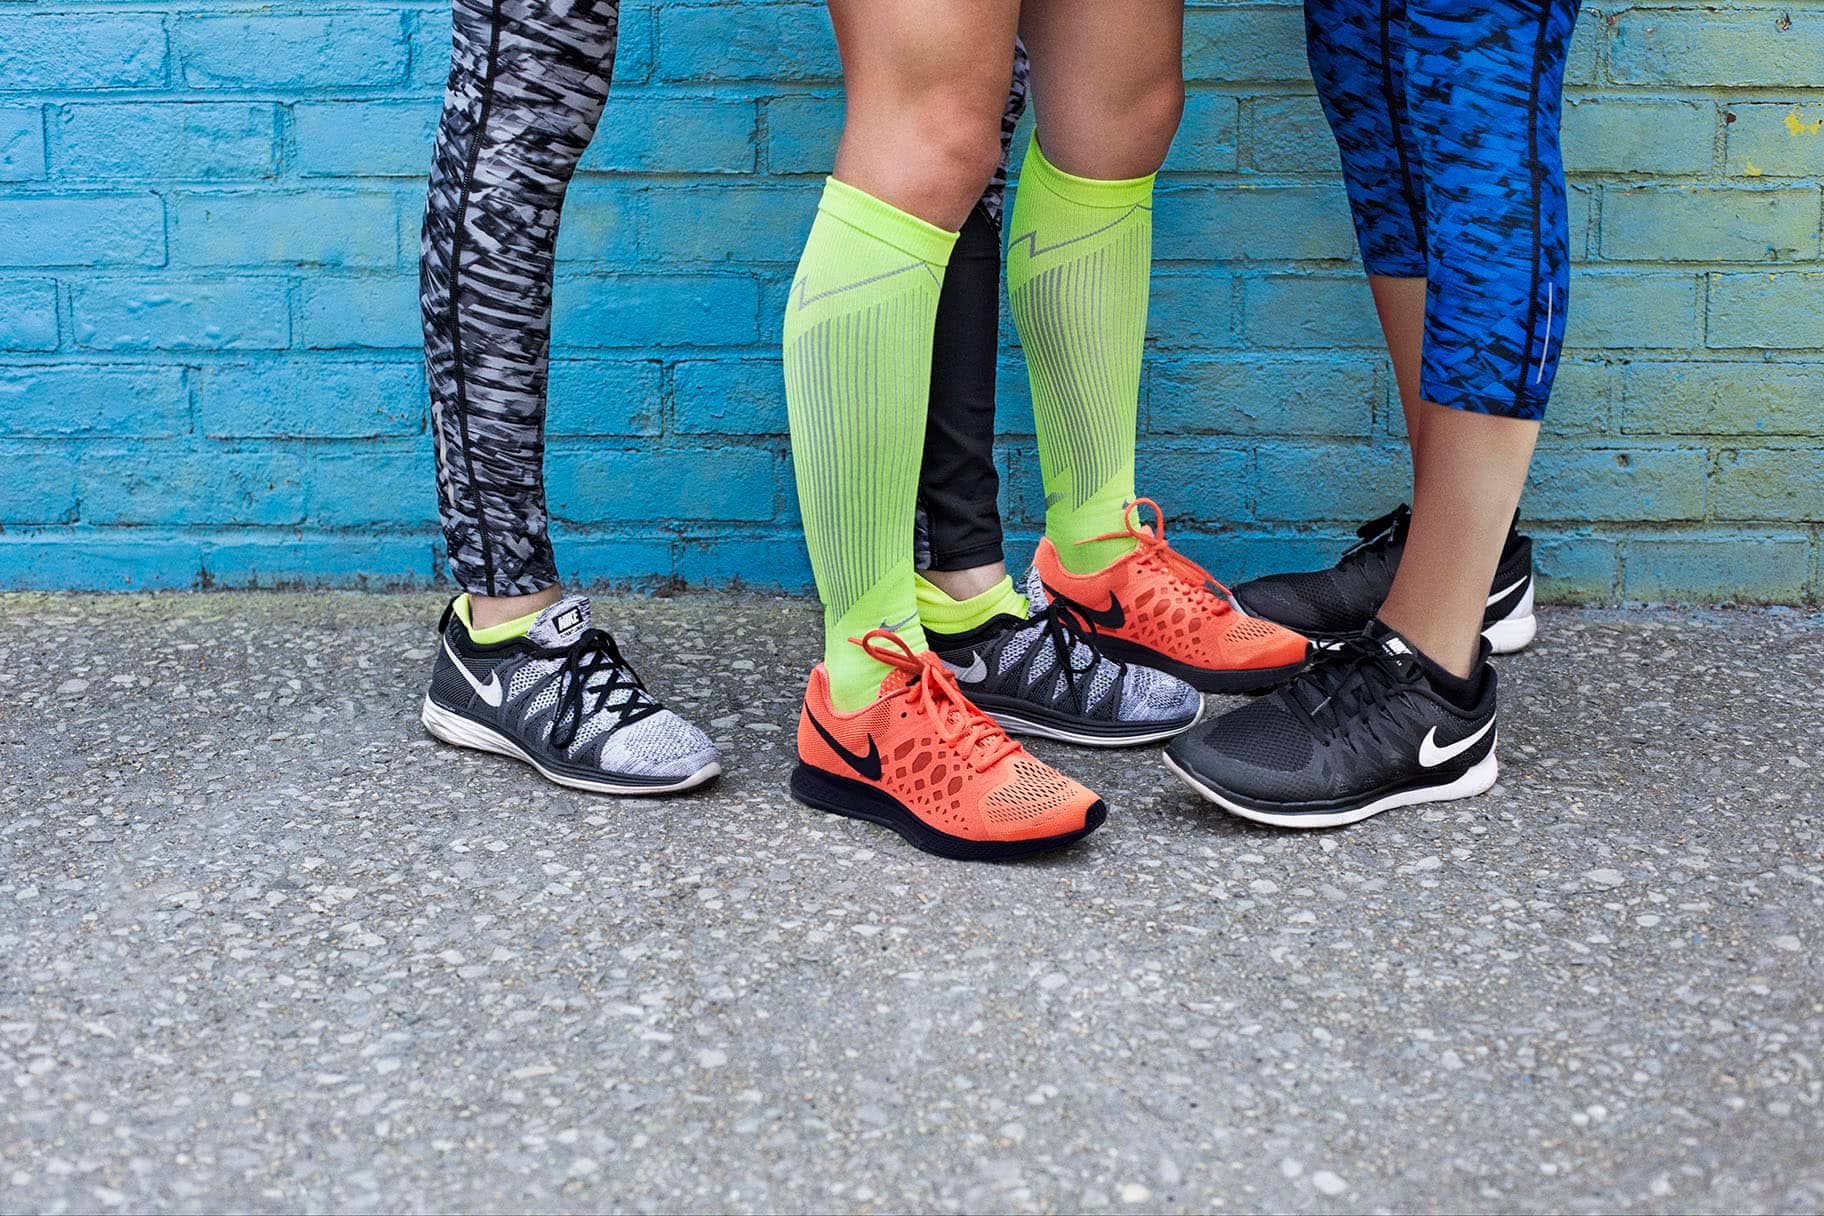 Combatiente posición provocar Cómo elegir los mejores calcetines de compresión para running. Nike